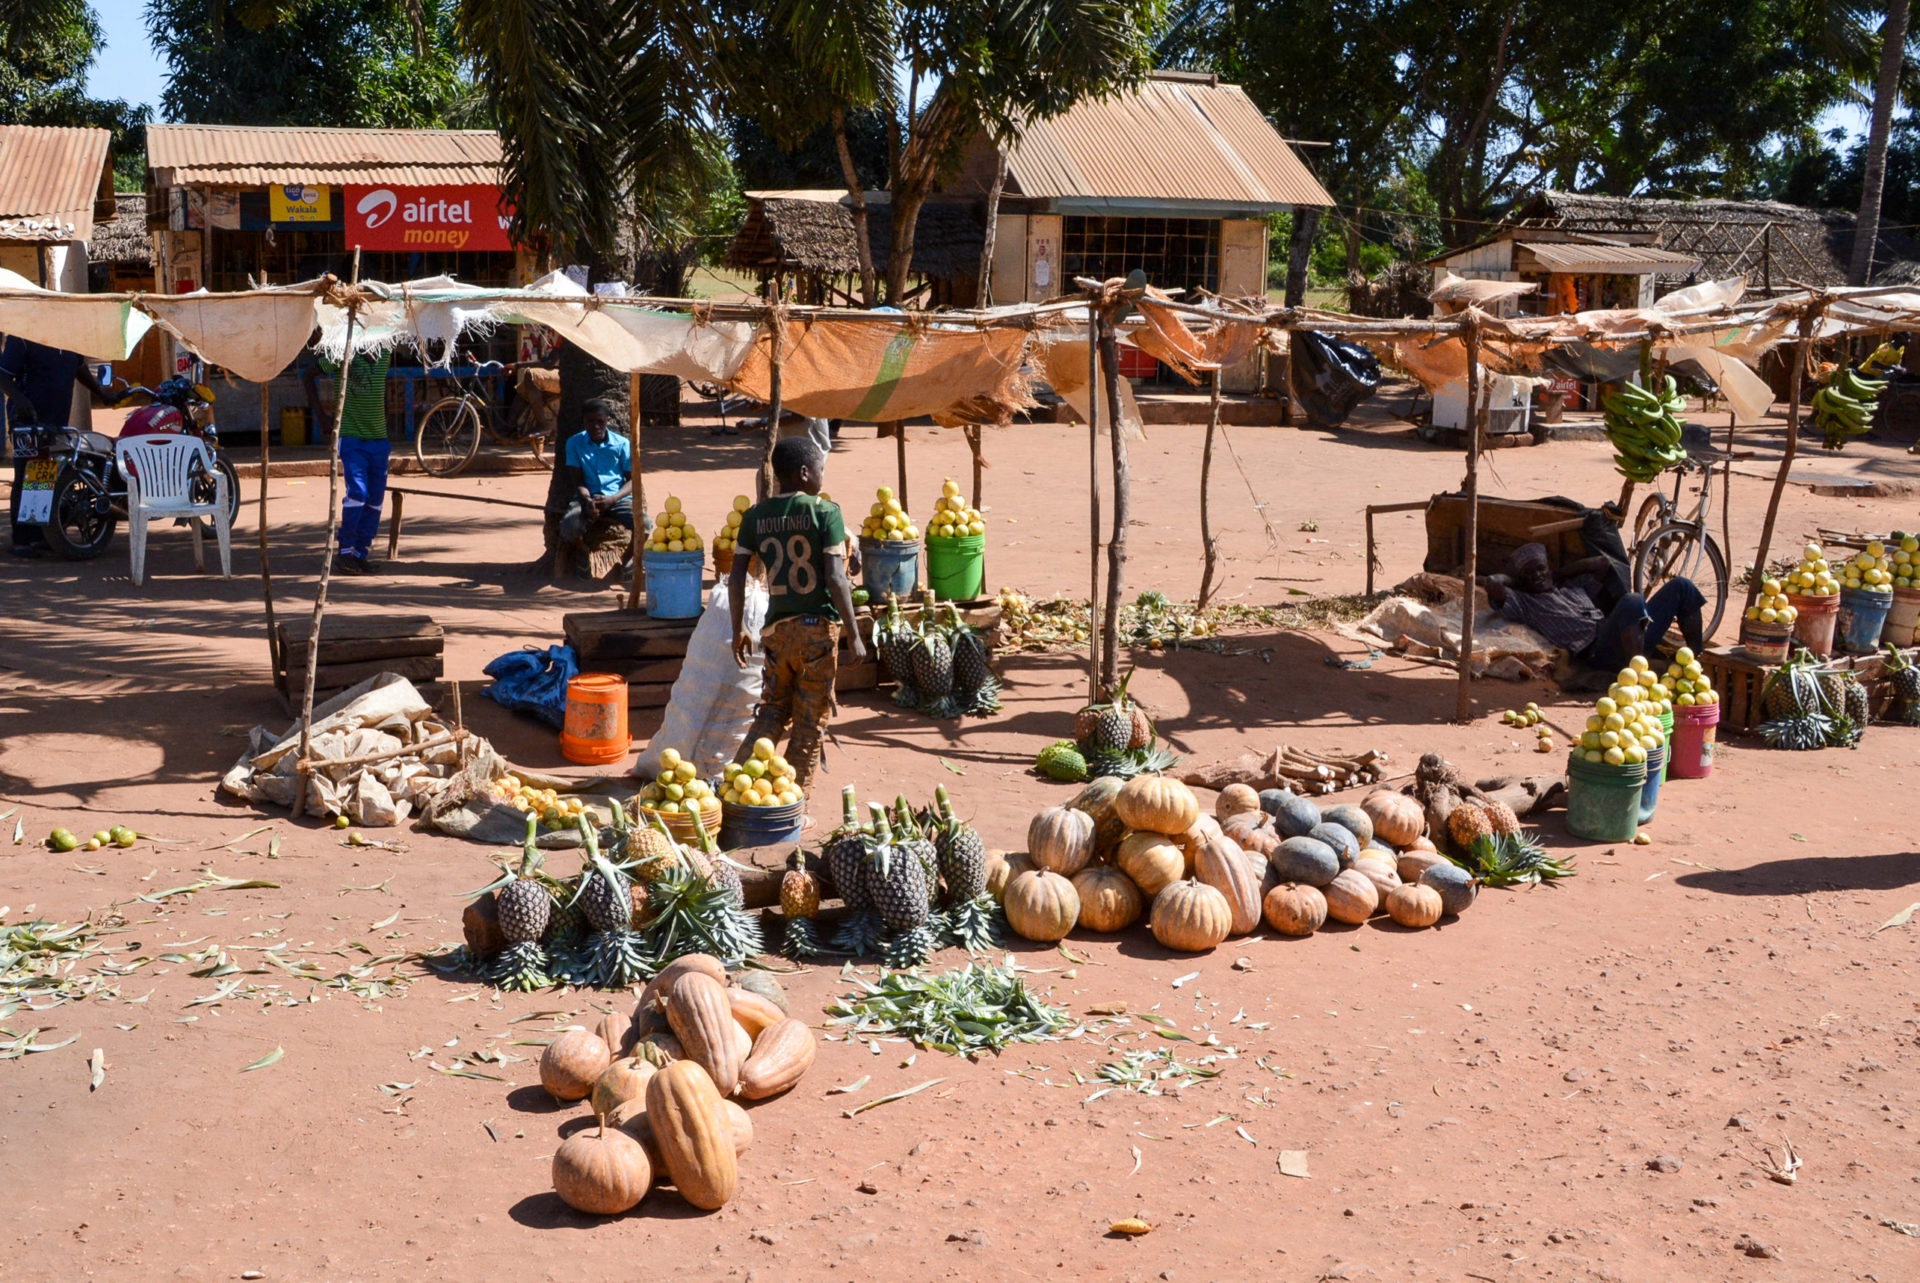 Verkauf von Obst und Gemüse am Straßenrand in Tansania